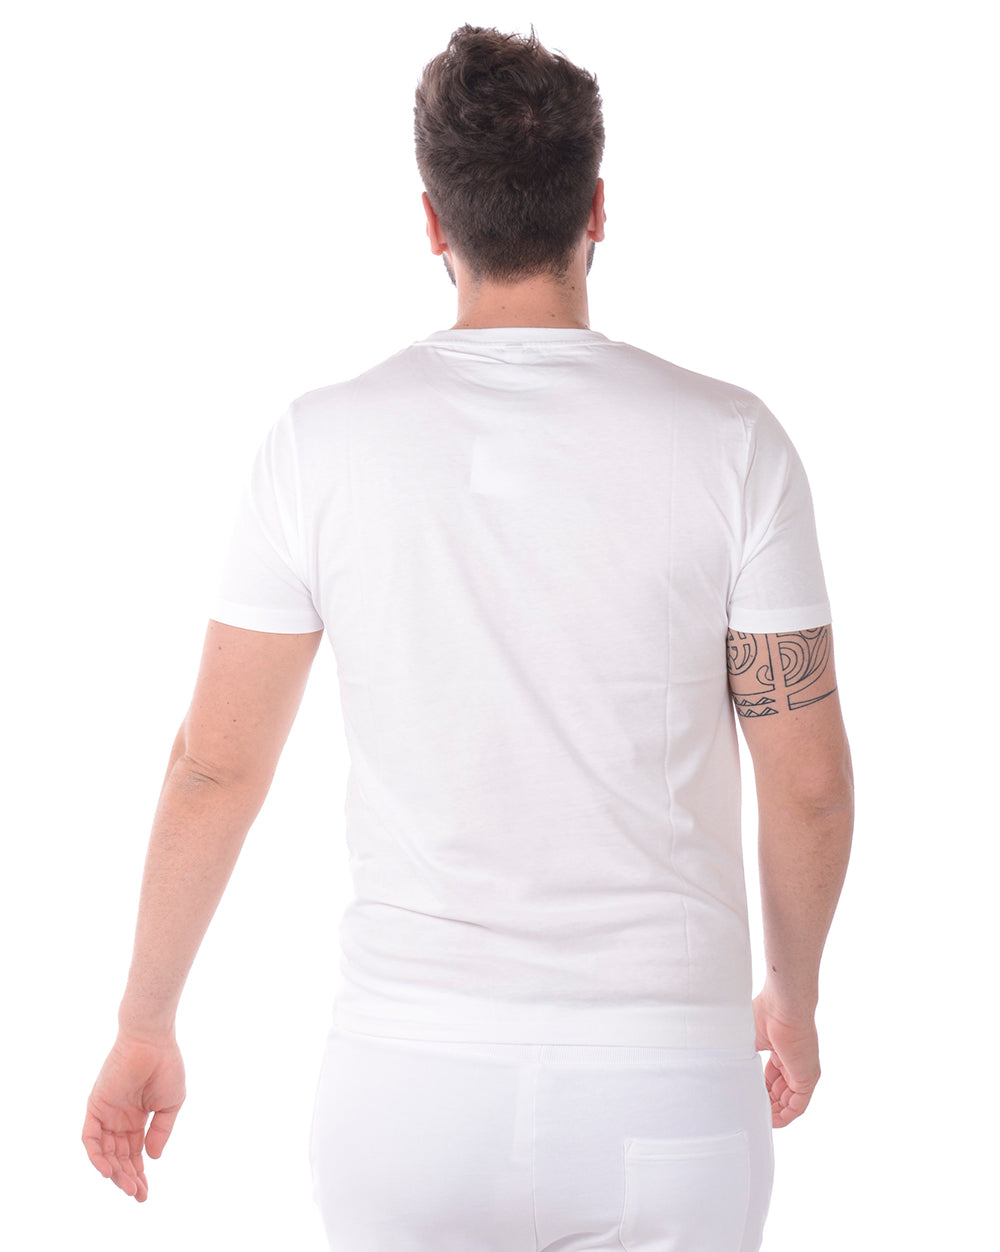 T-shirt Moschino Underwear Stampato Nero GGXXL - mem39